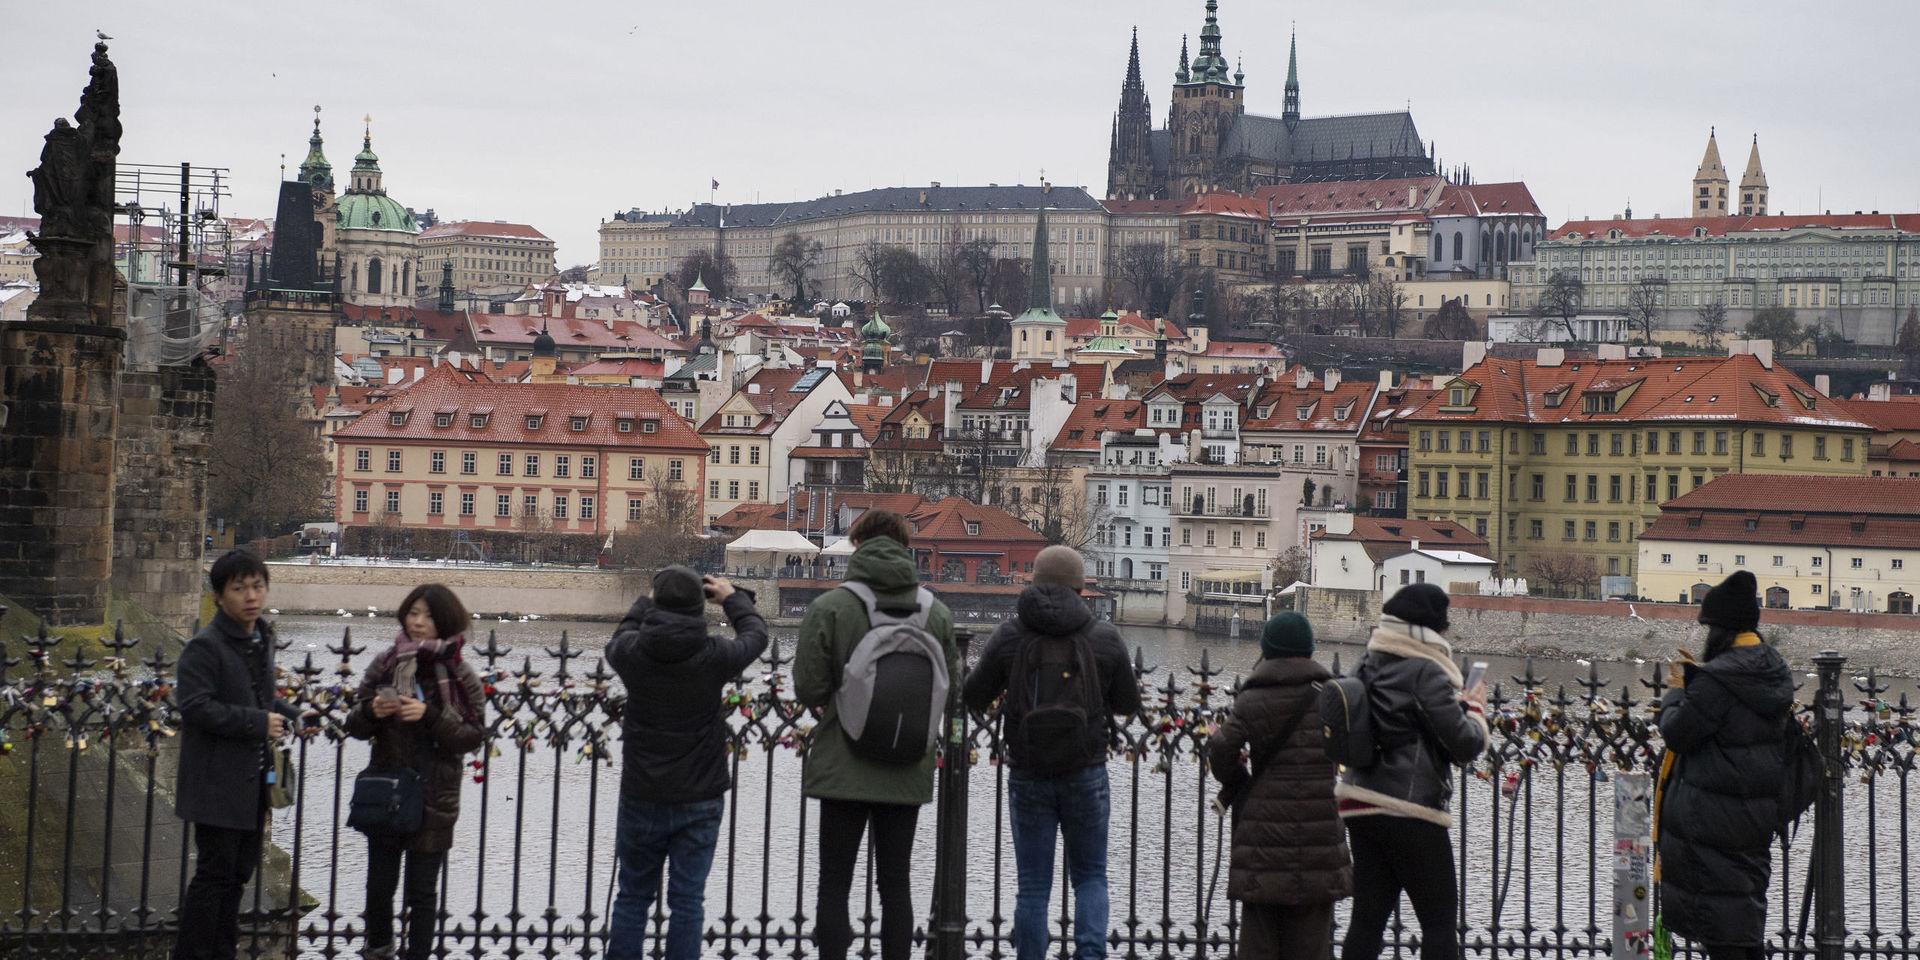 Turismen till Prag ökar stadigt, förra året kom 8 miljoner besökare till staden. Mest ökar den kinesiska turismen som steg med 30% under samma år.